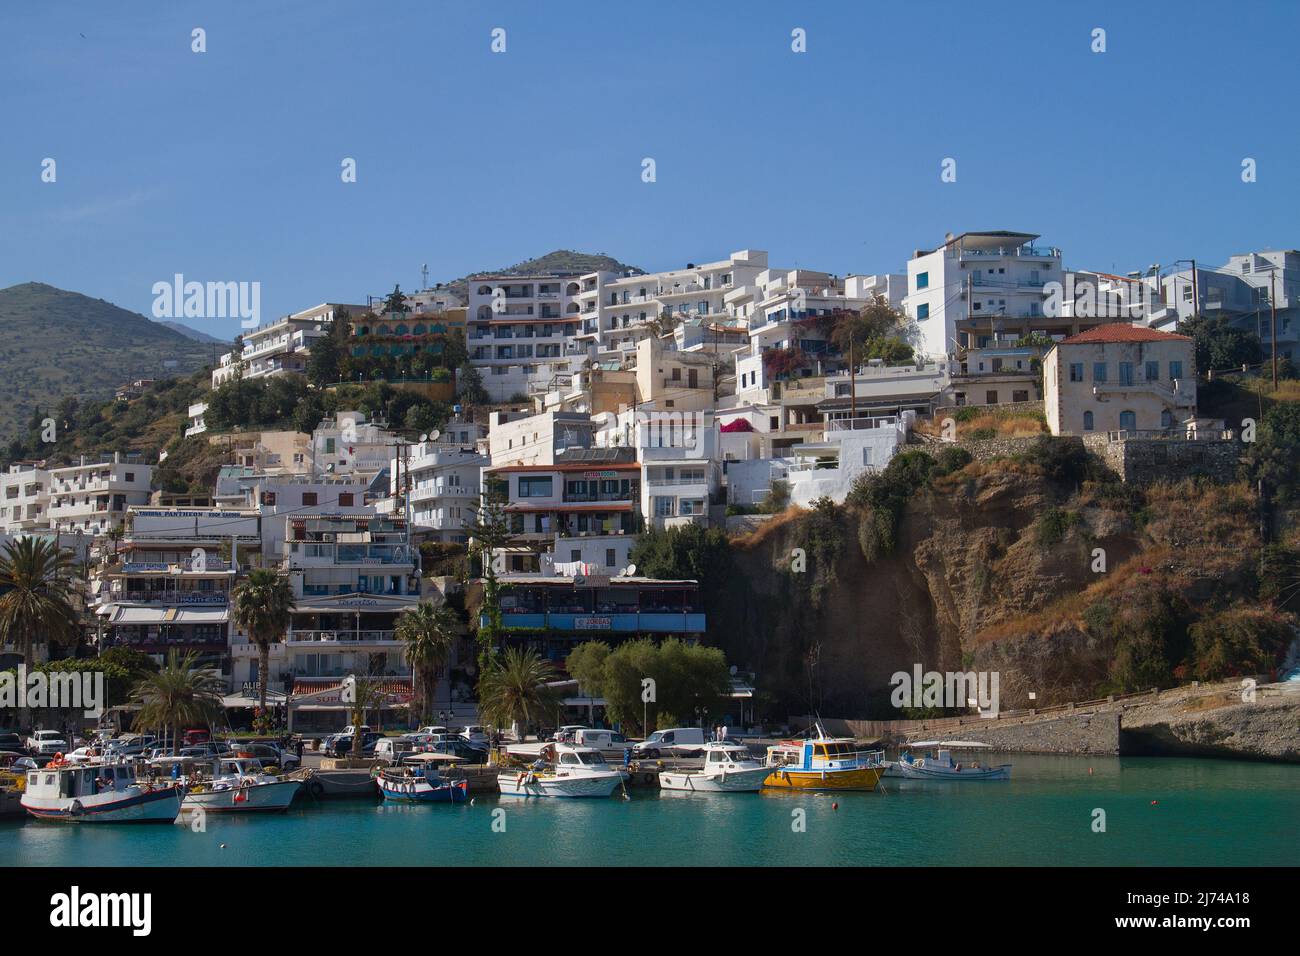 Agia Galini, pittoresco villaggio mediterraneo con case bianche e barche da pesca in porto con acqua blu Foto Stock